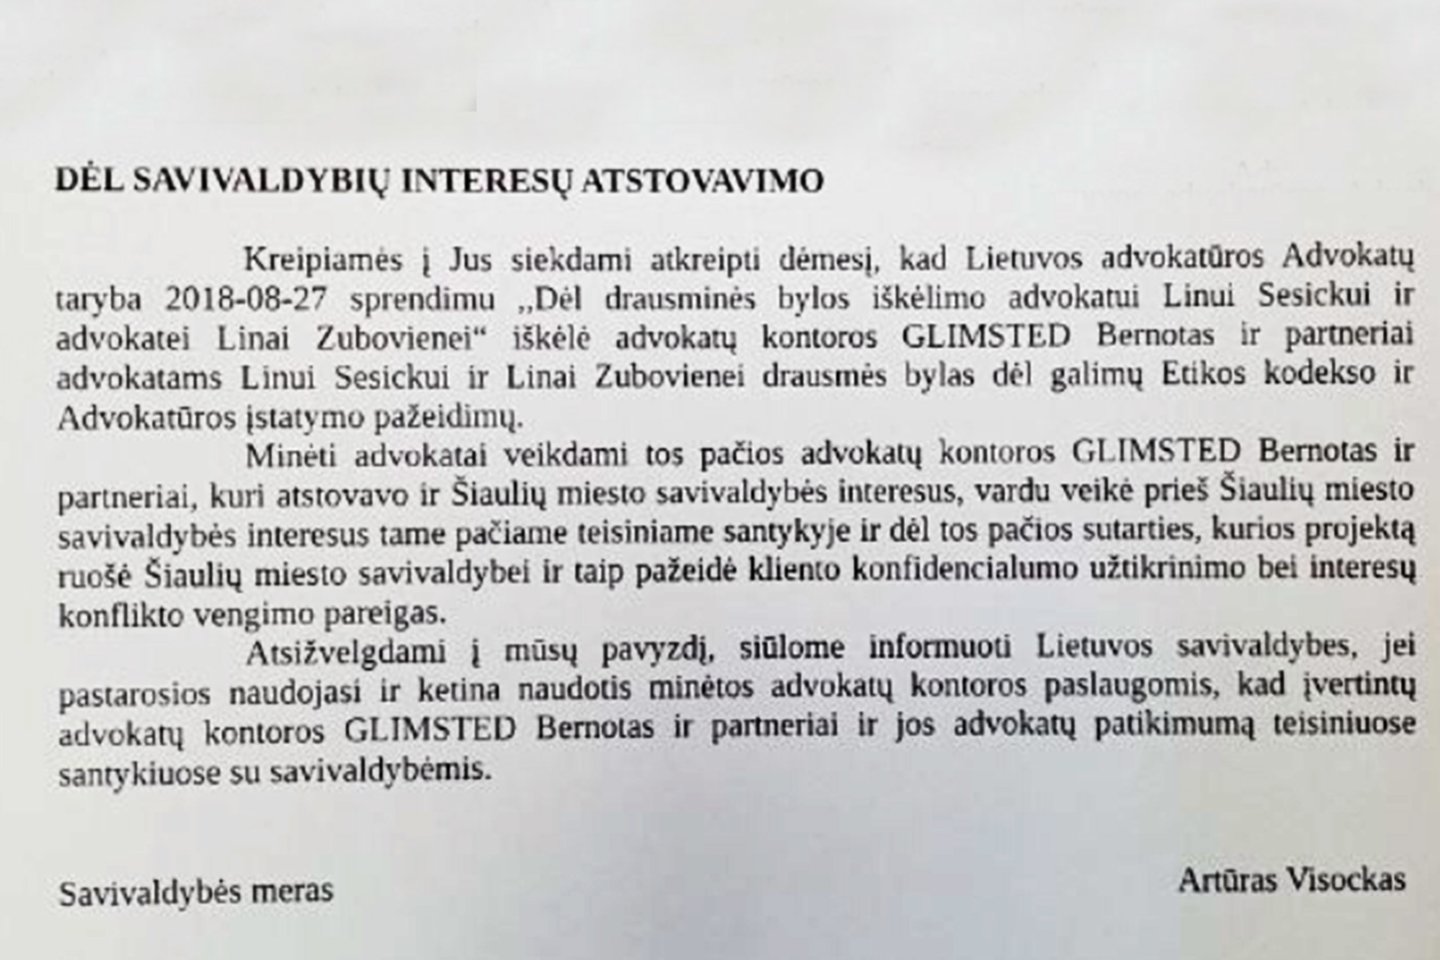  Šiaulių miesto savivaldybė išsiuntė perspėjimą Lietuvos savivaldybių asociacijos nariams.